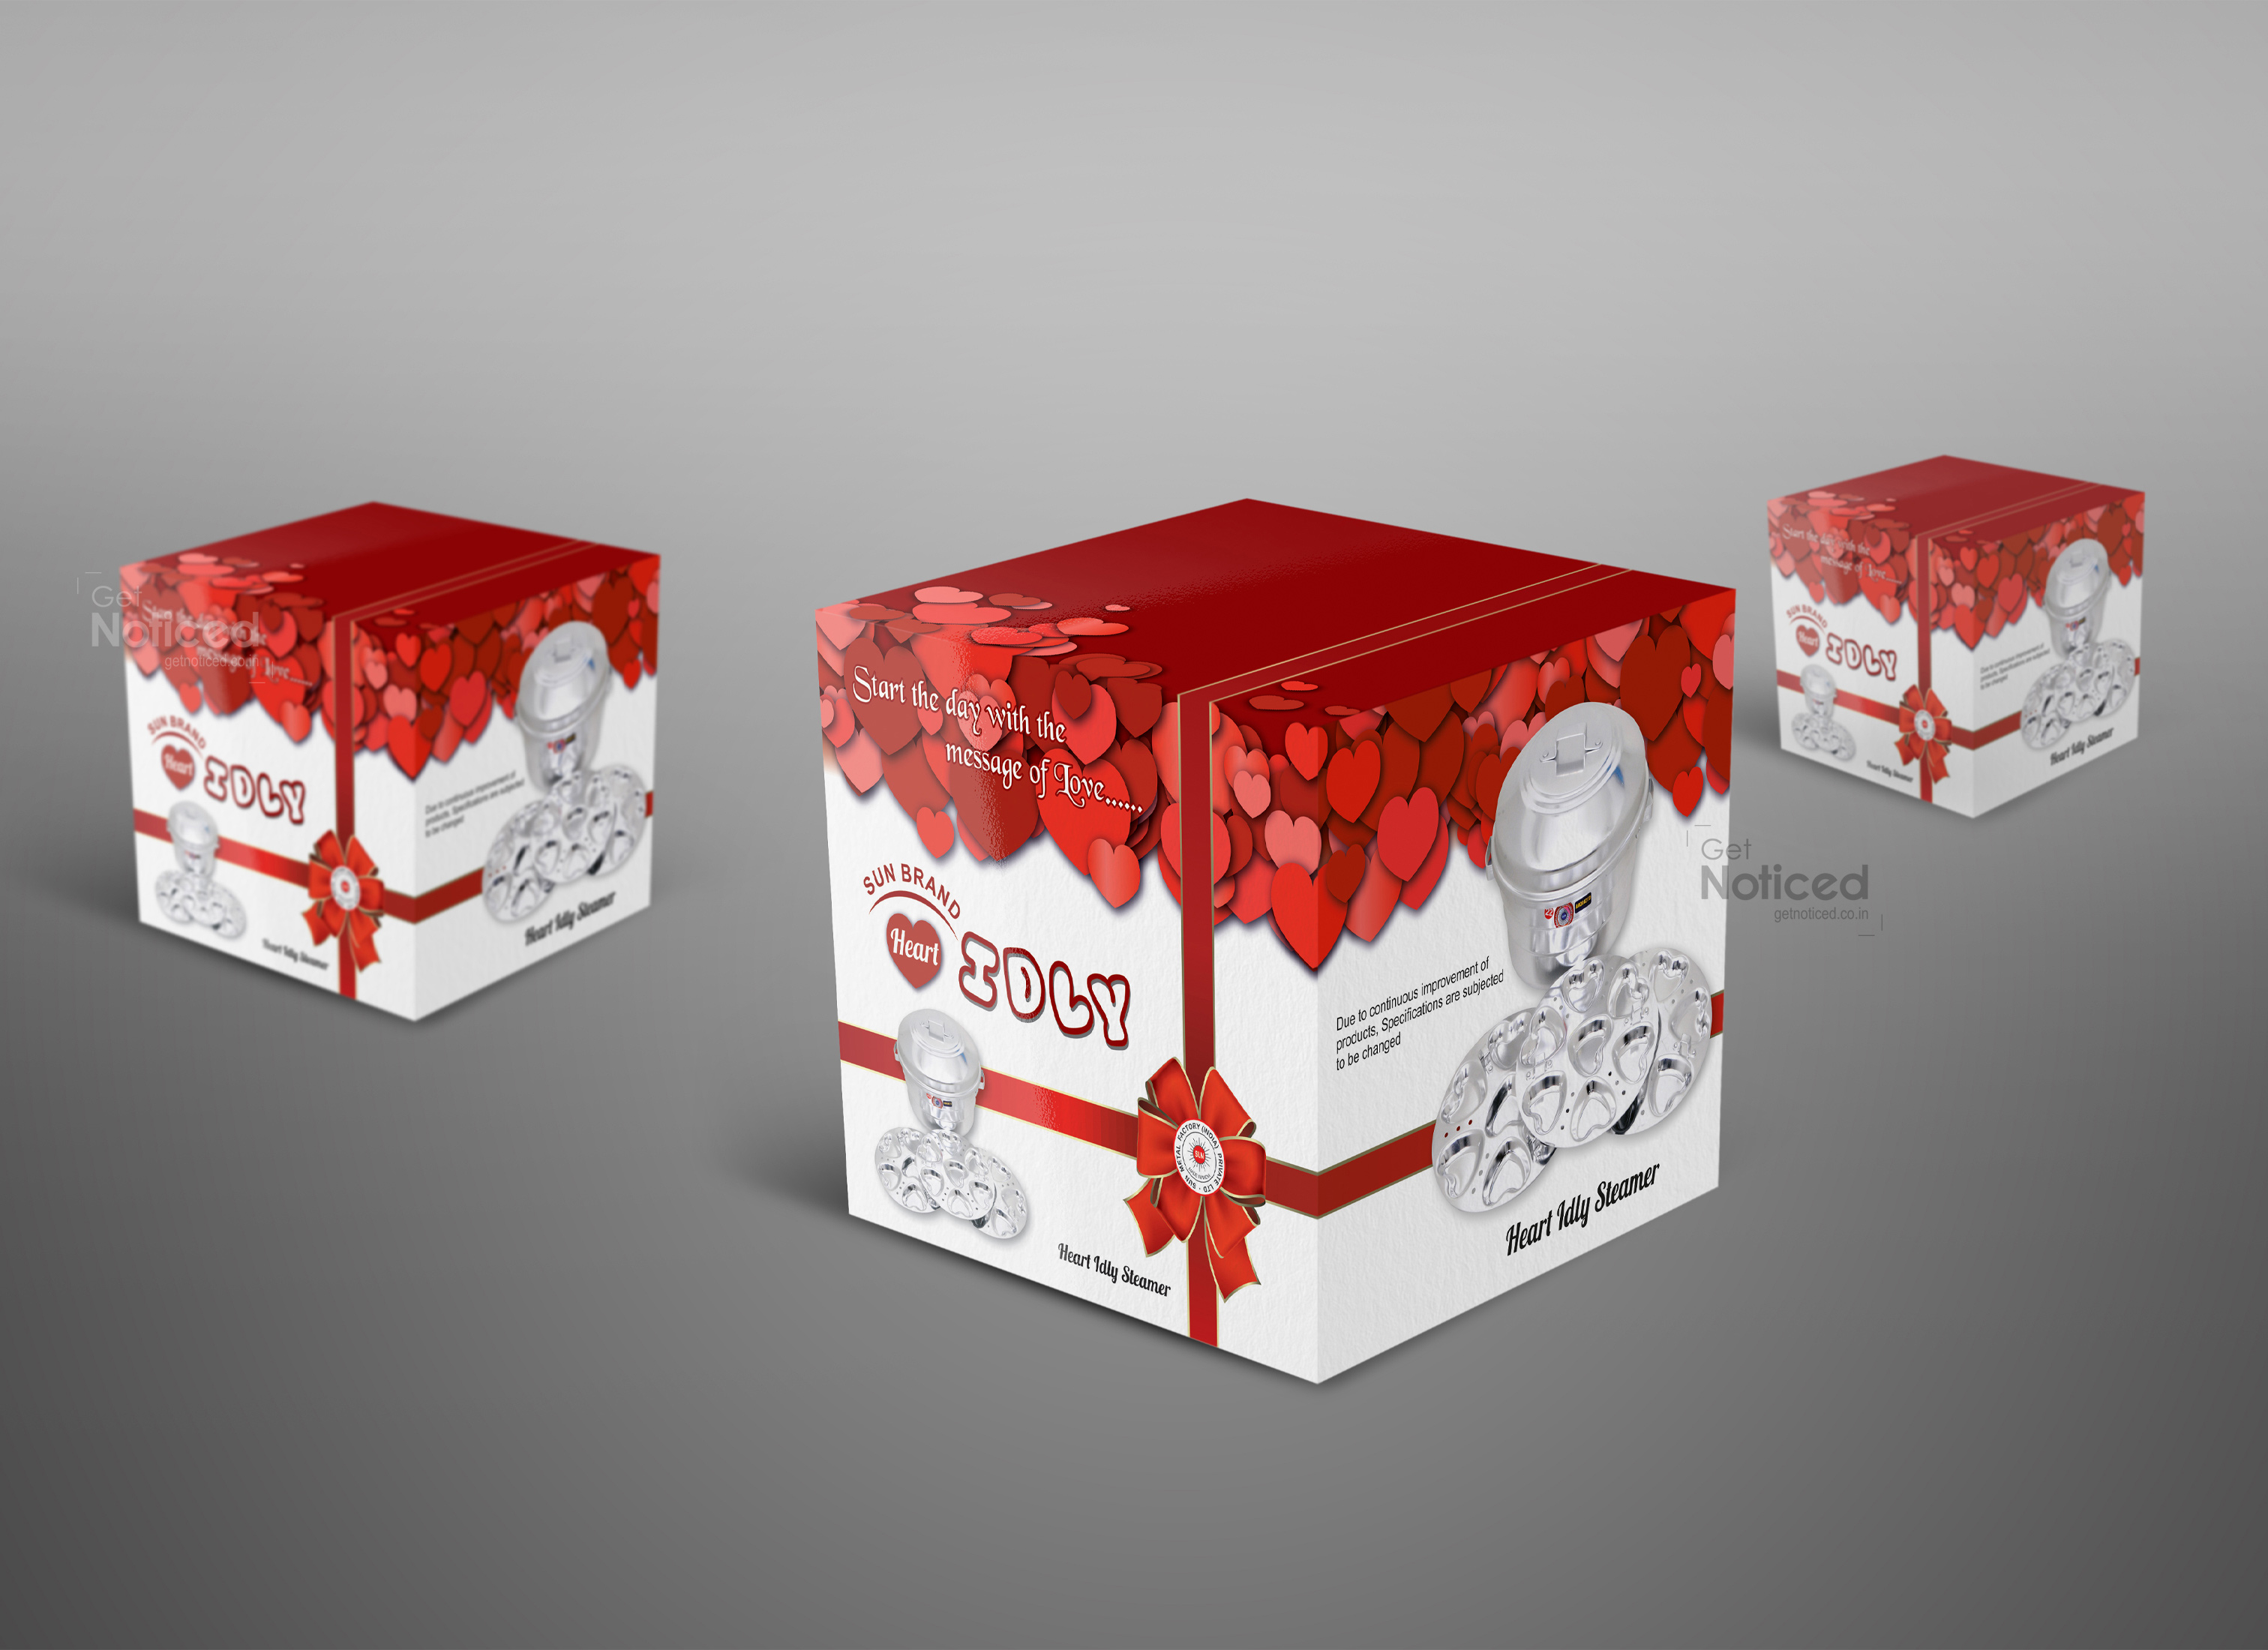 Sun Brand Idli Cooker Packaging Design